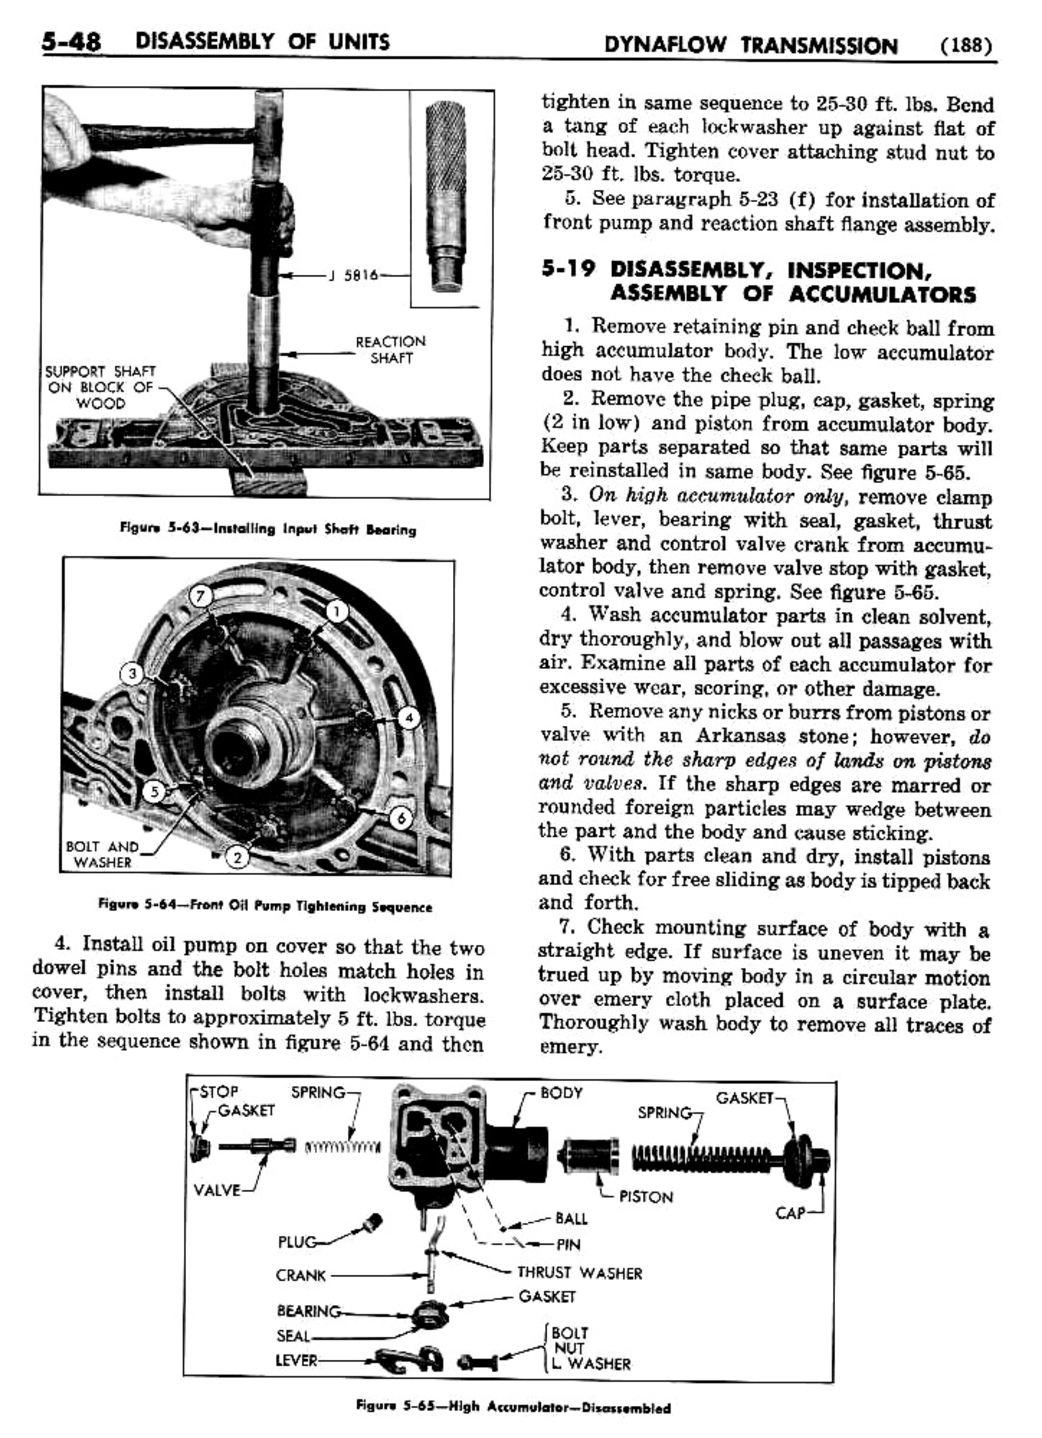 n_06 1955 Buick Shop Manual - Dynaflow-048-048.jpg